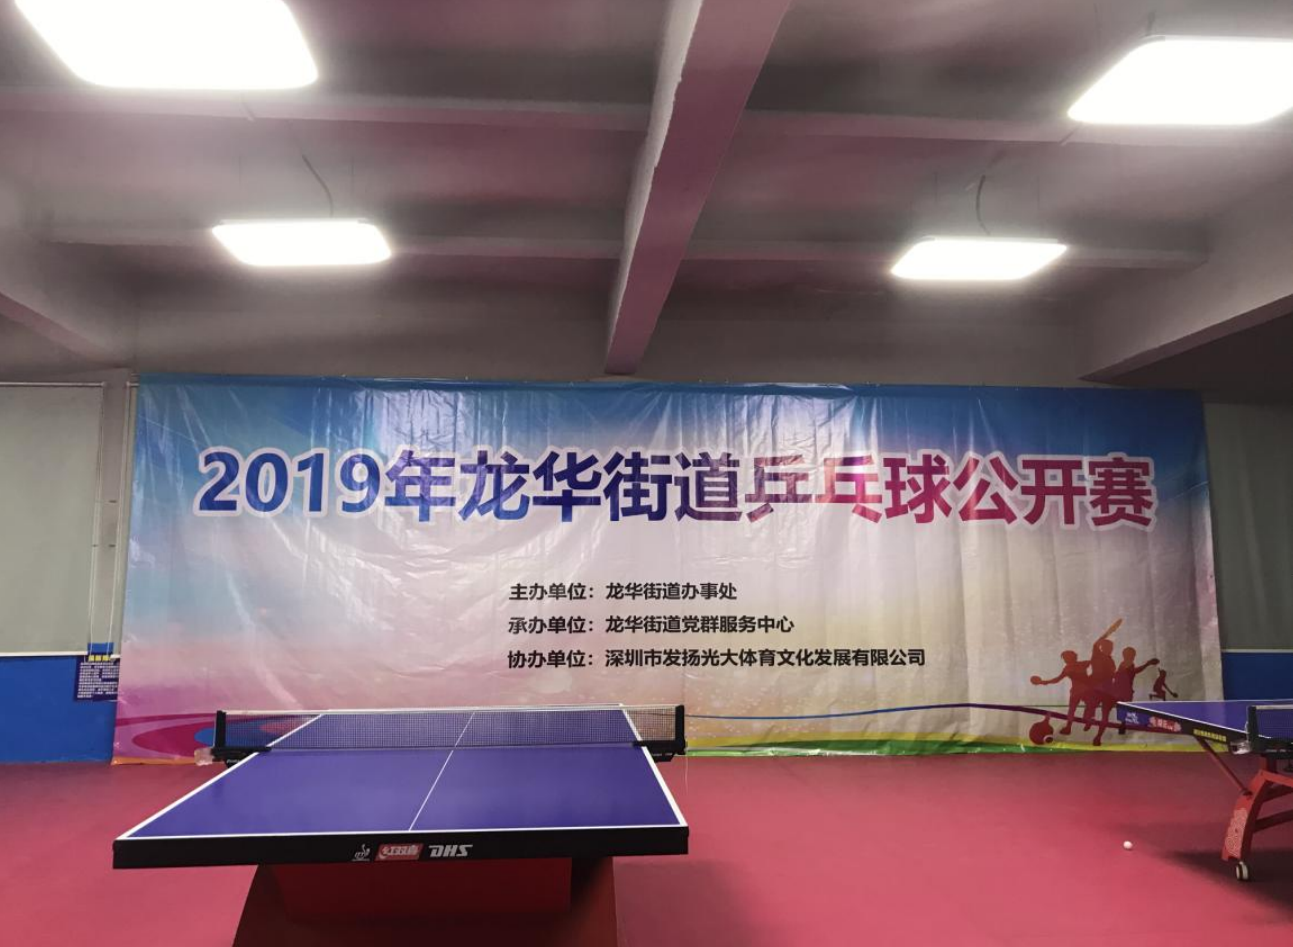  深圳↓市威视智能科技有限公司参加2019年龙华街道乒乓球公开赛